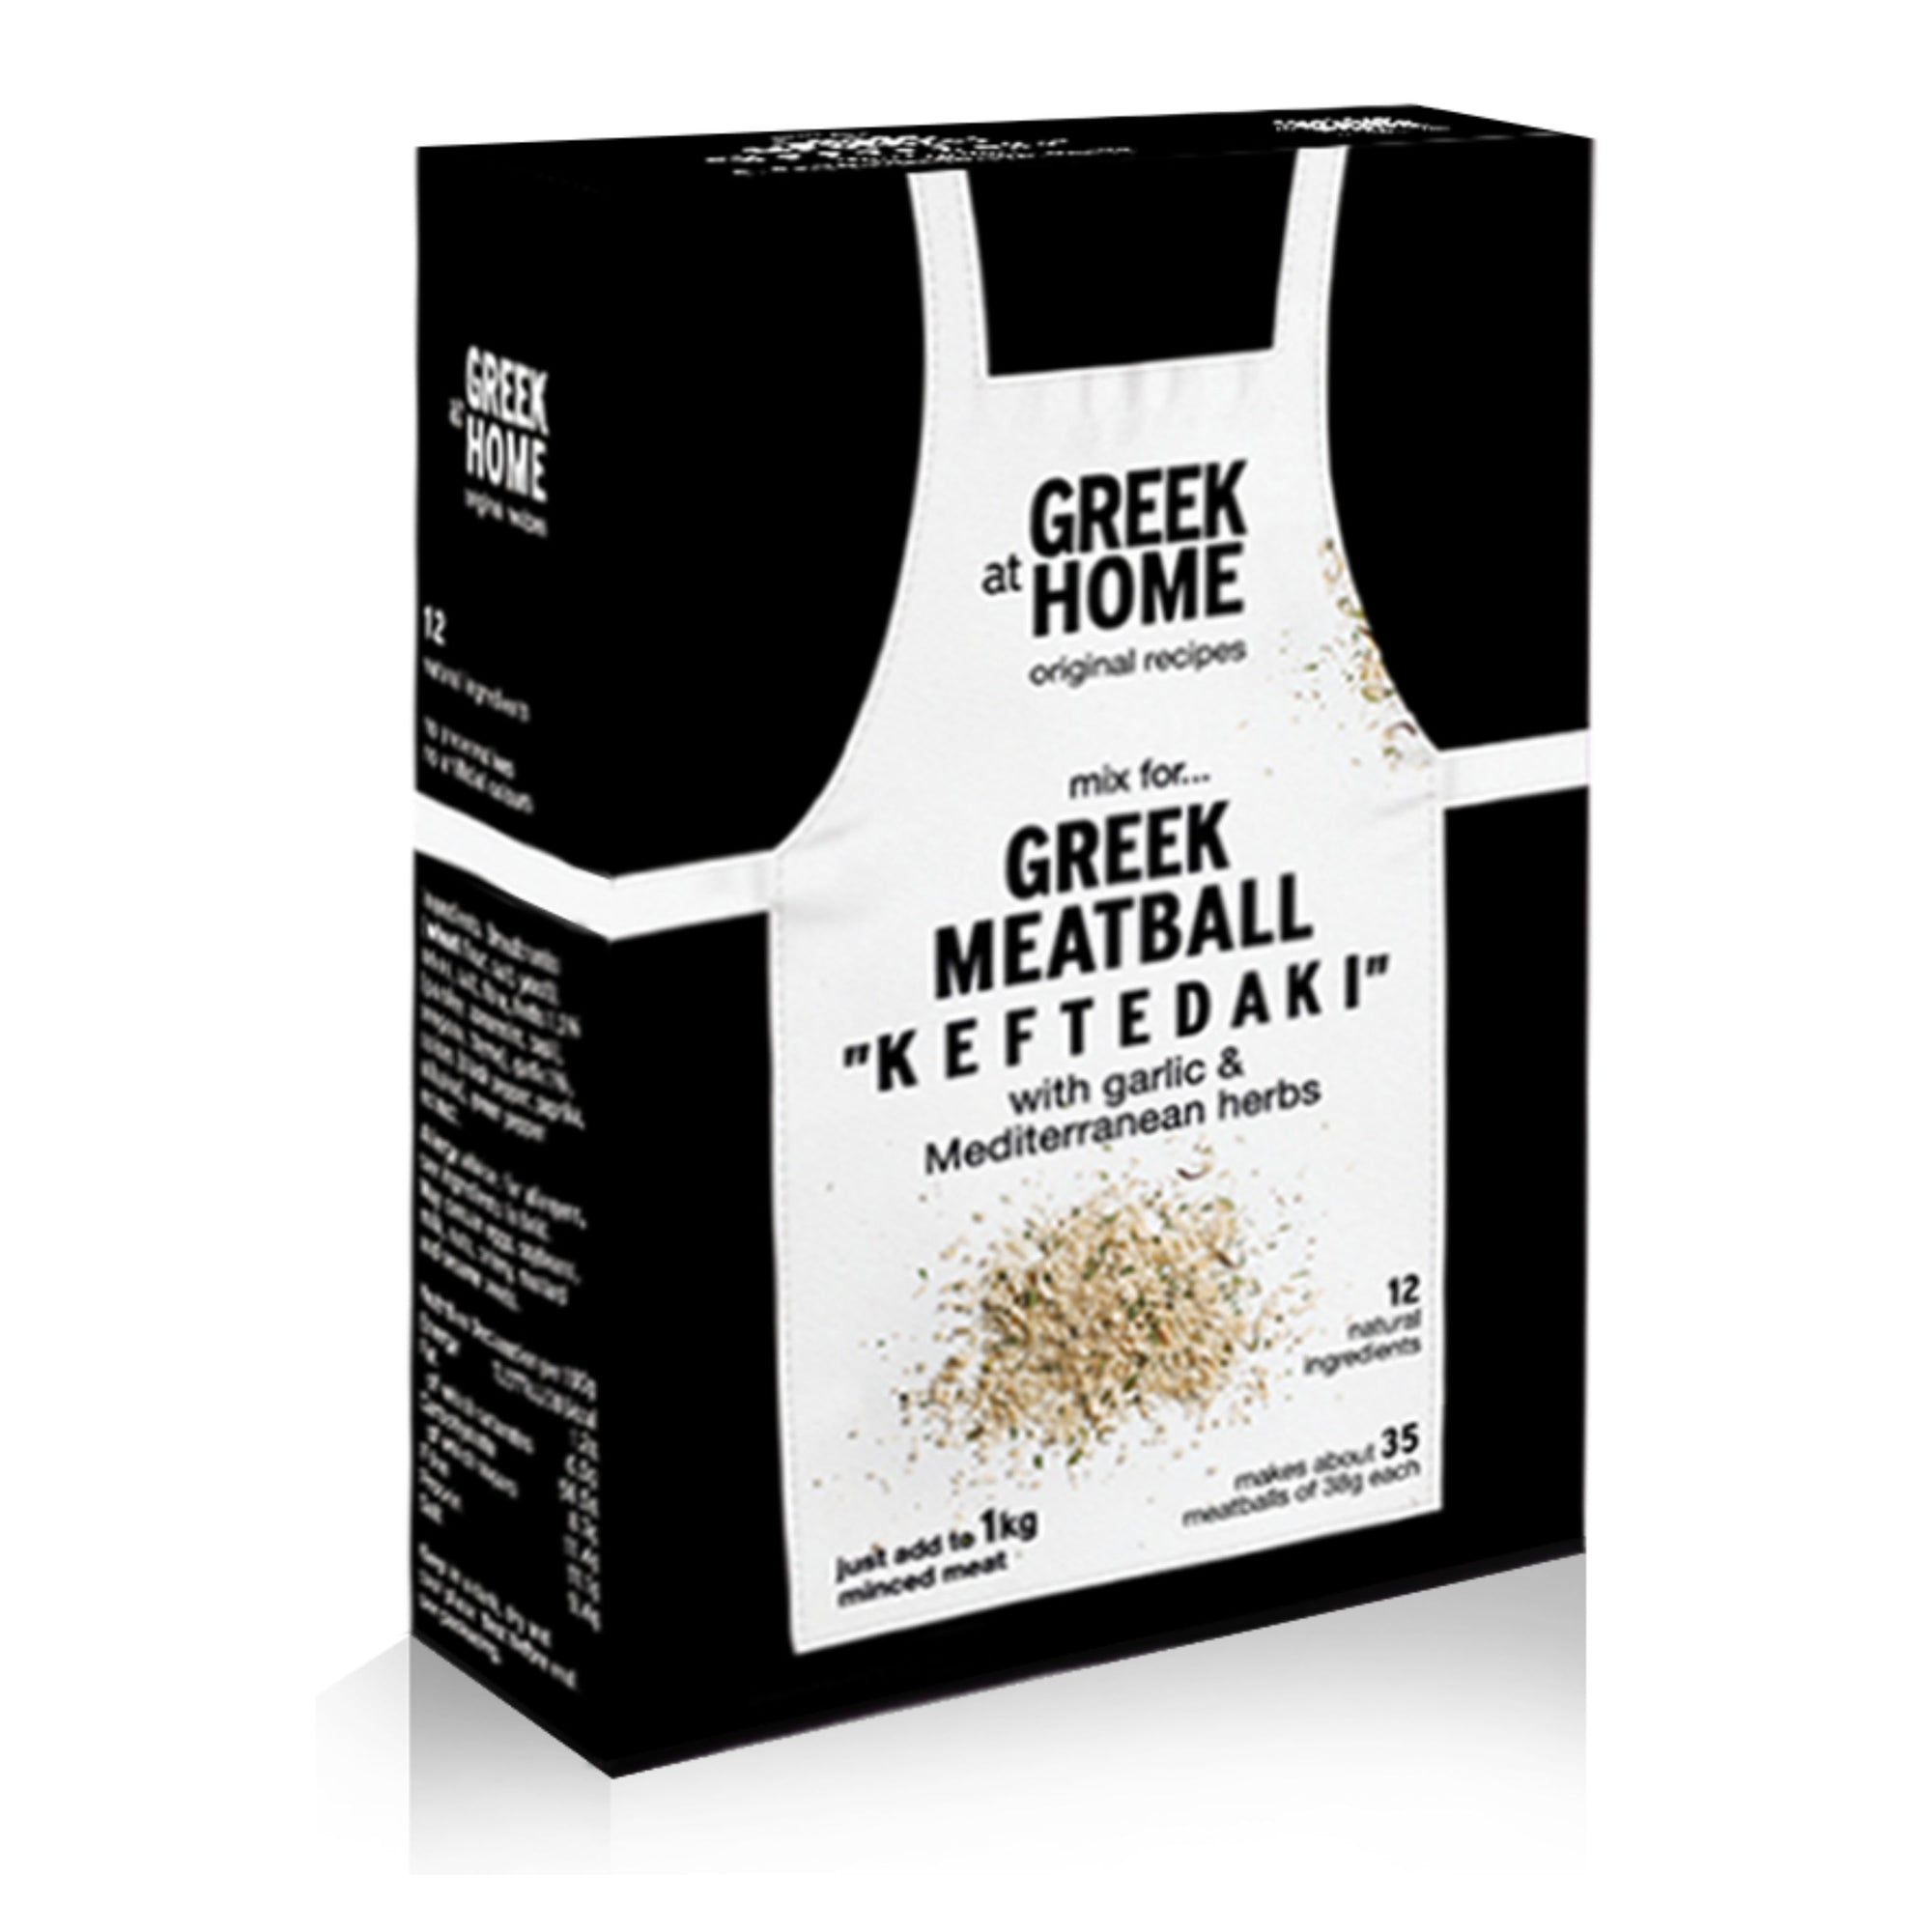 Greek Meatball "Keftedaki" Spice Mix 130g